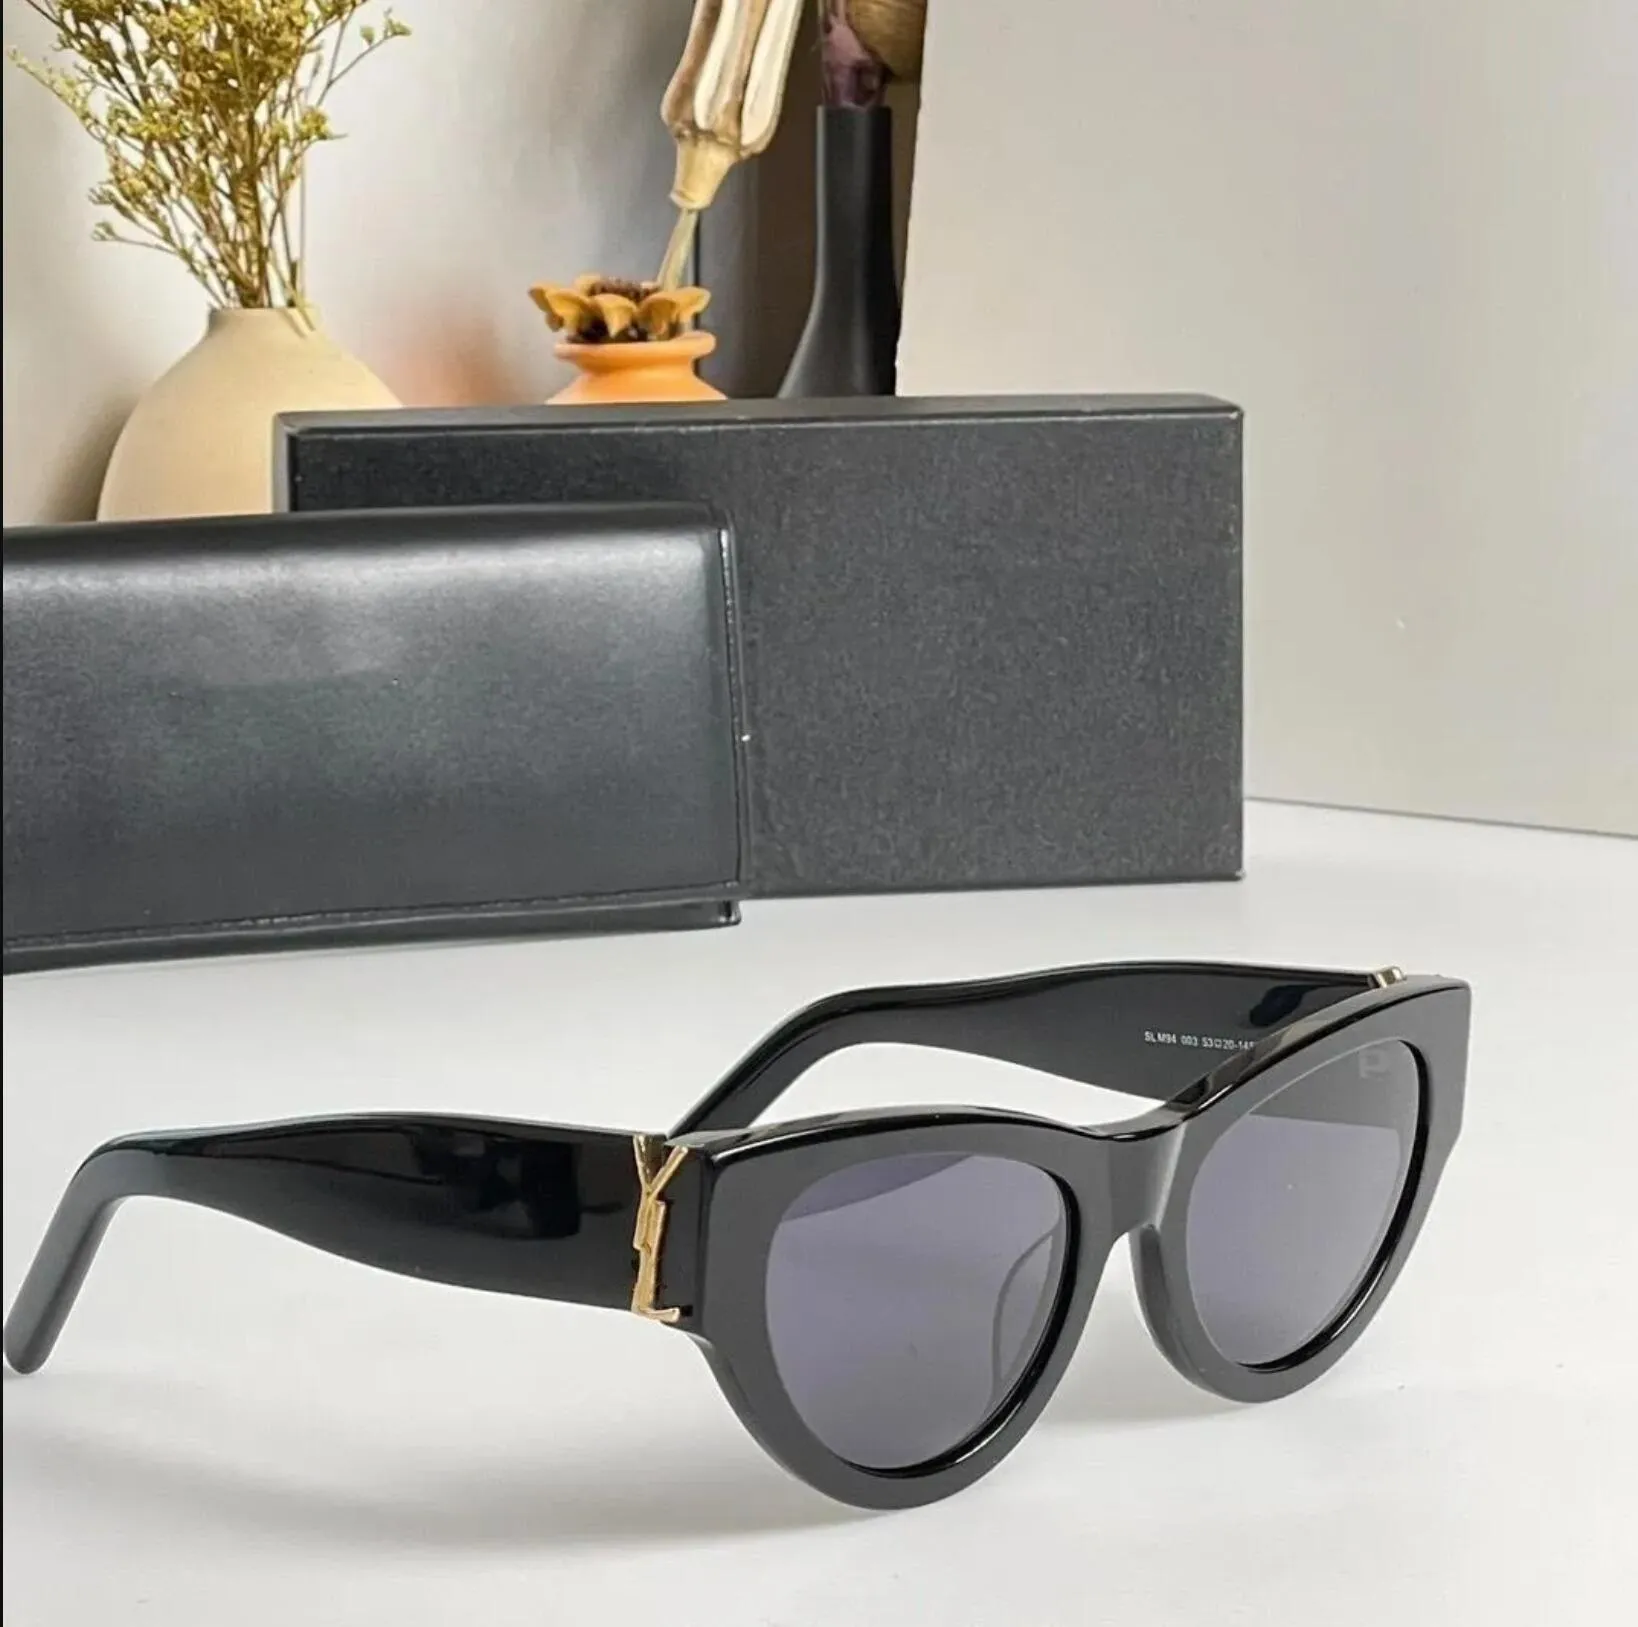 Роскошные солнцезащитные очки с логотипом Y slM6090 в одном стиле для женщин и мужчин. Дизайнерские уличные пляжные очки. Классические очки-бабочки в узкой оправе «кошачий глаз» с оригинальной коробкой для подарка.